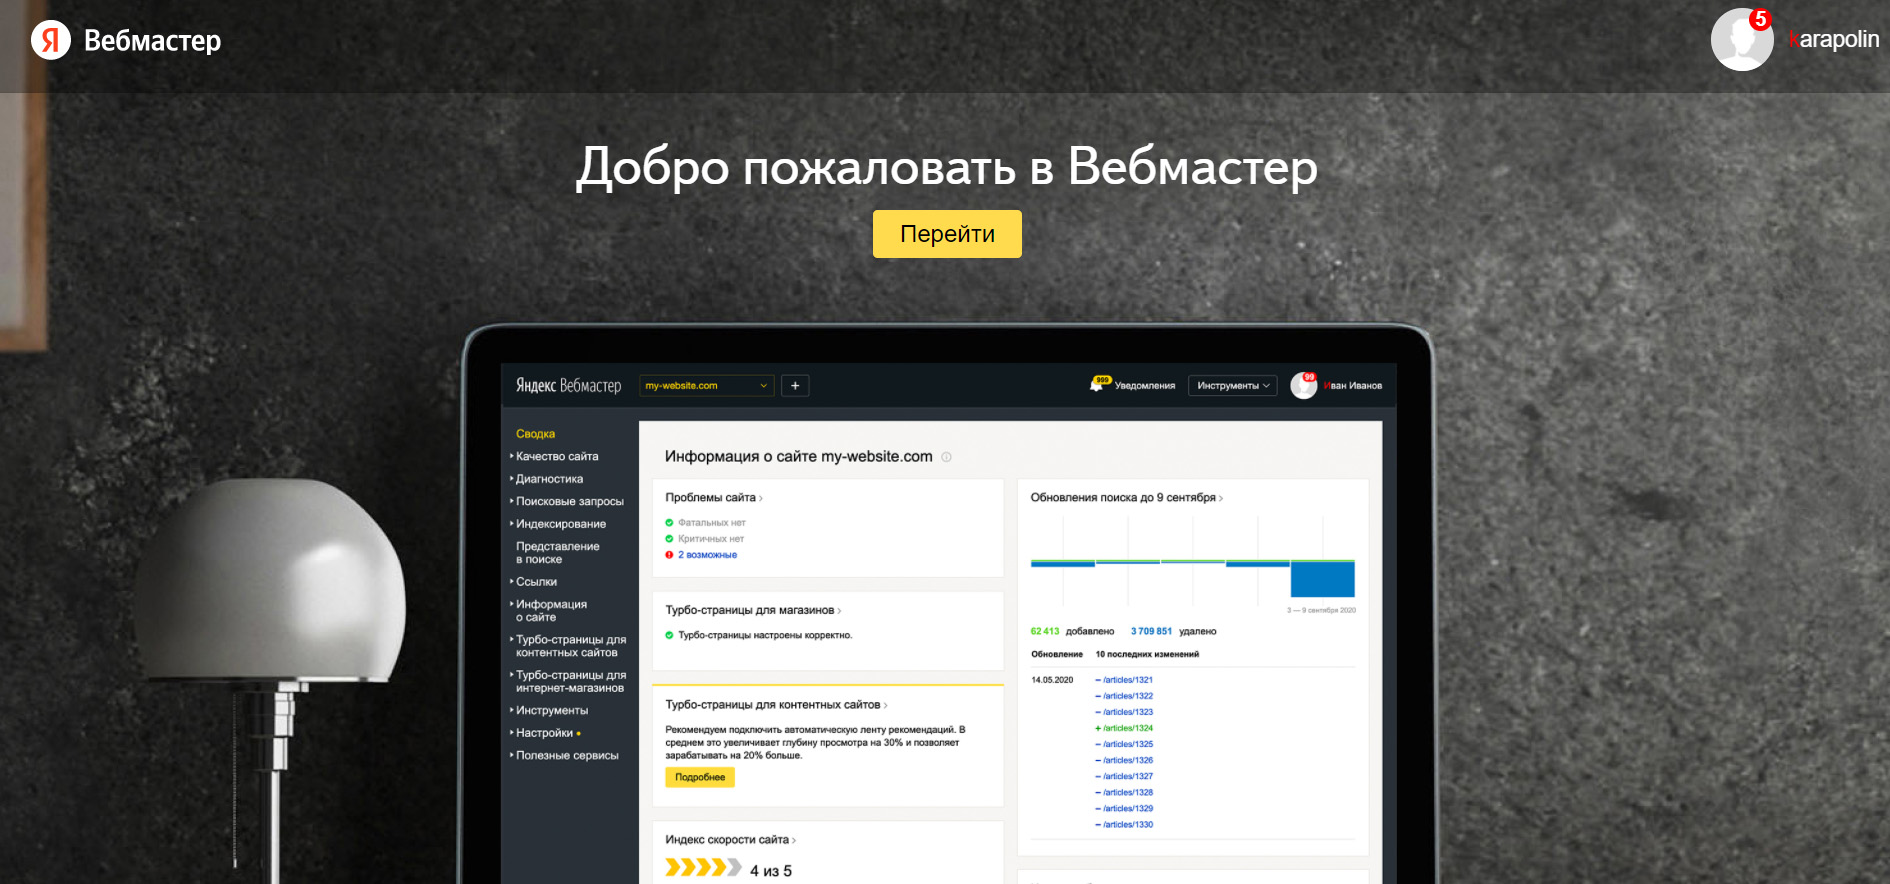 40+ инструментов SEO-специалиста: Яндекс Вебмастер